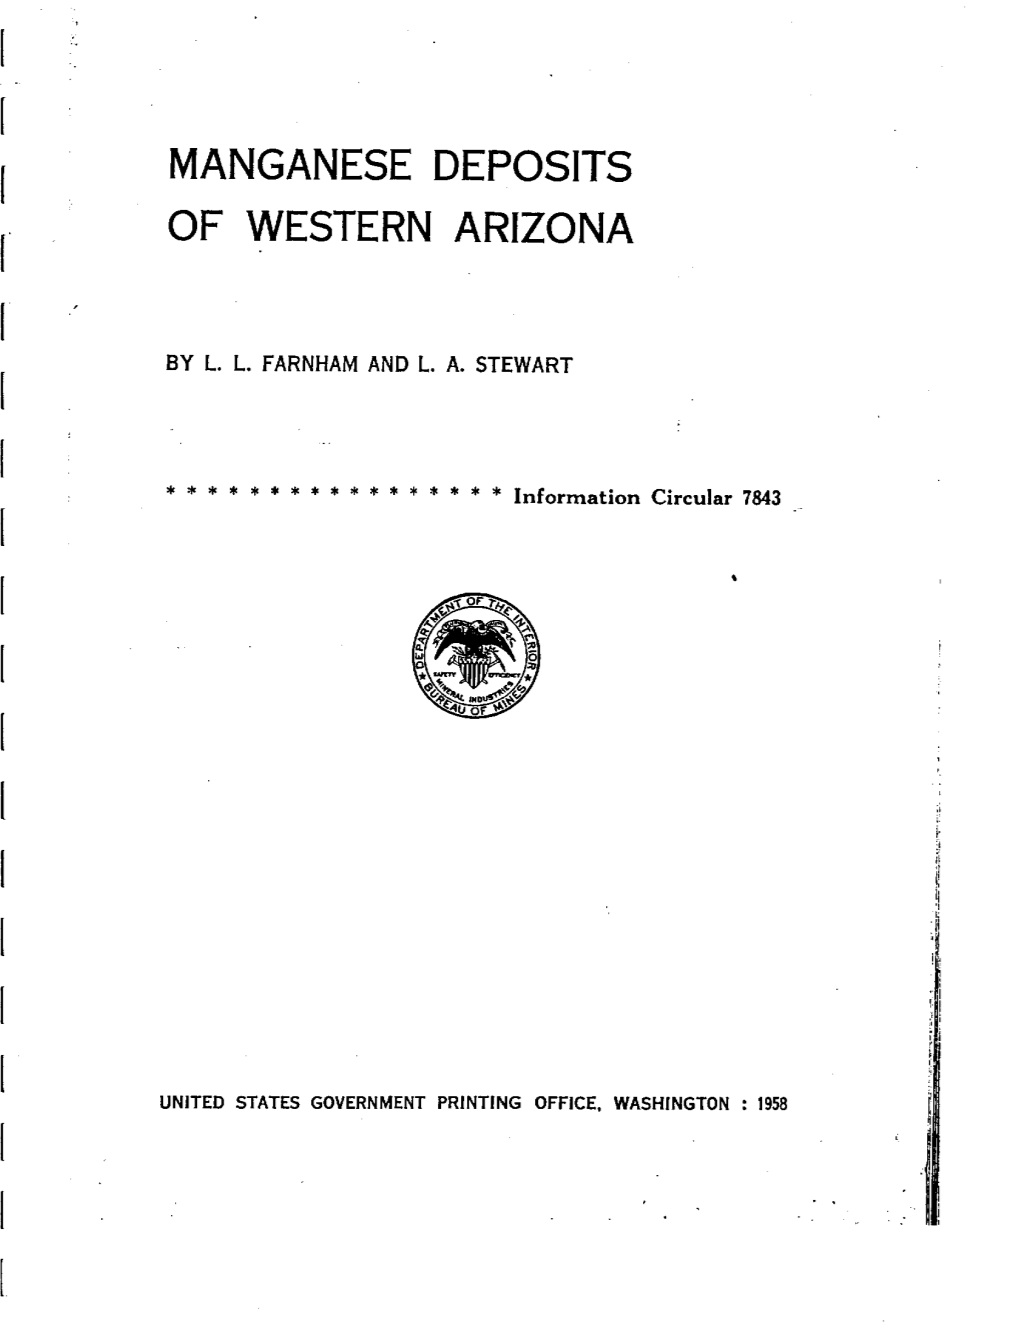 Manganese Deposits of Western Arizona I.C. 7843